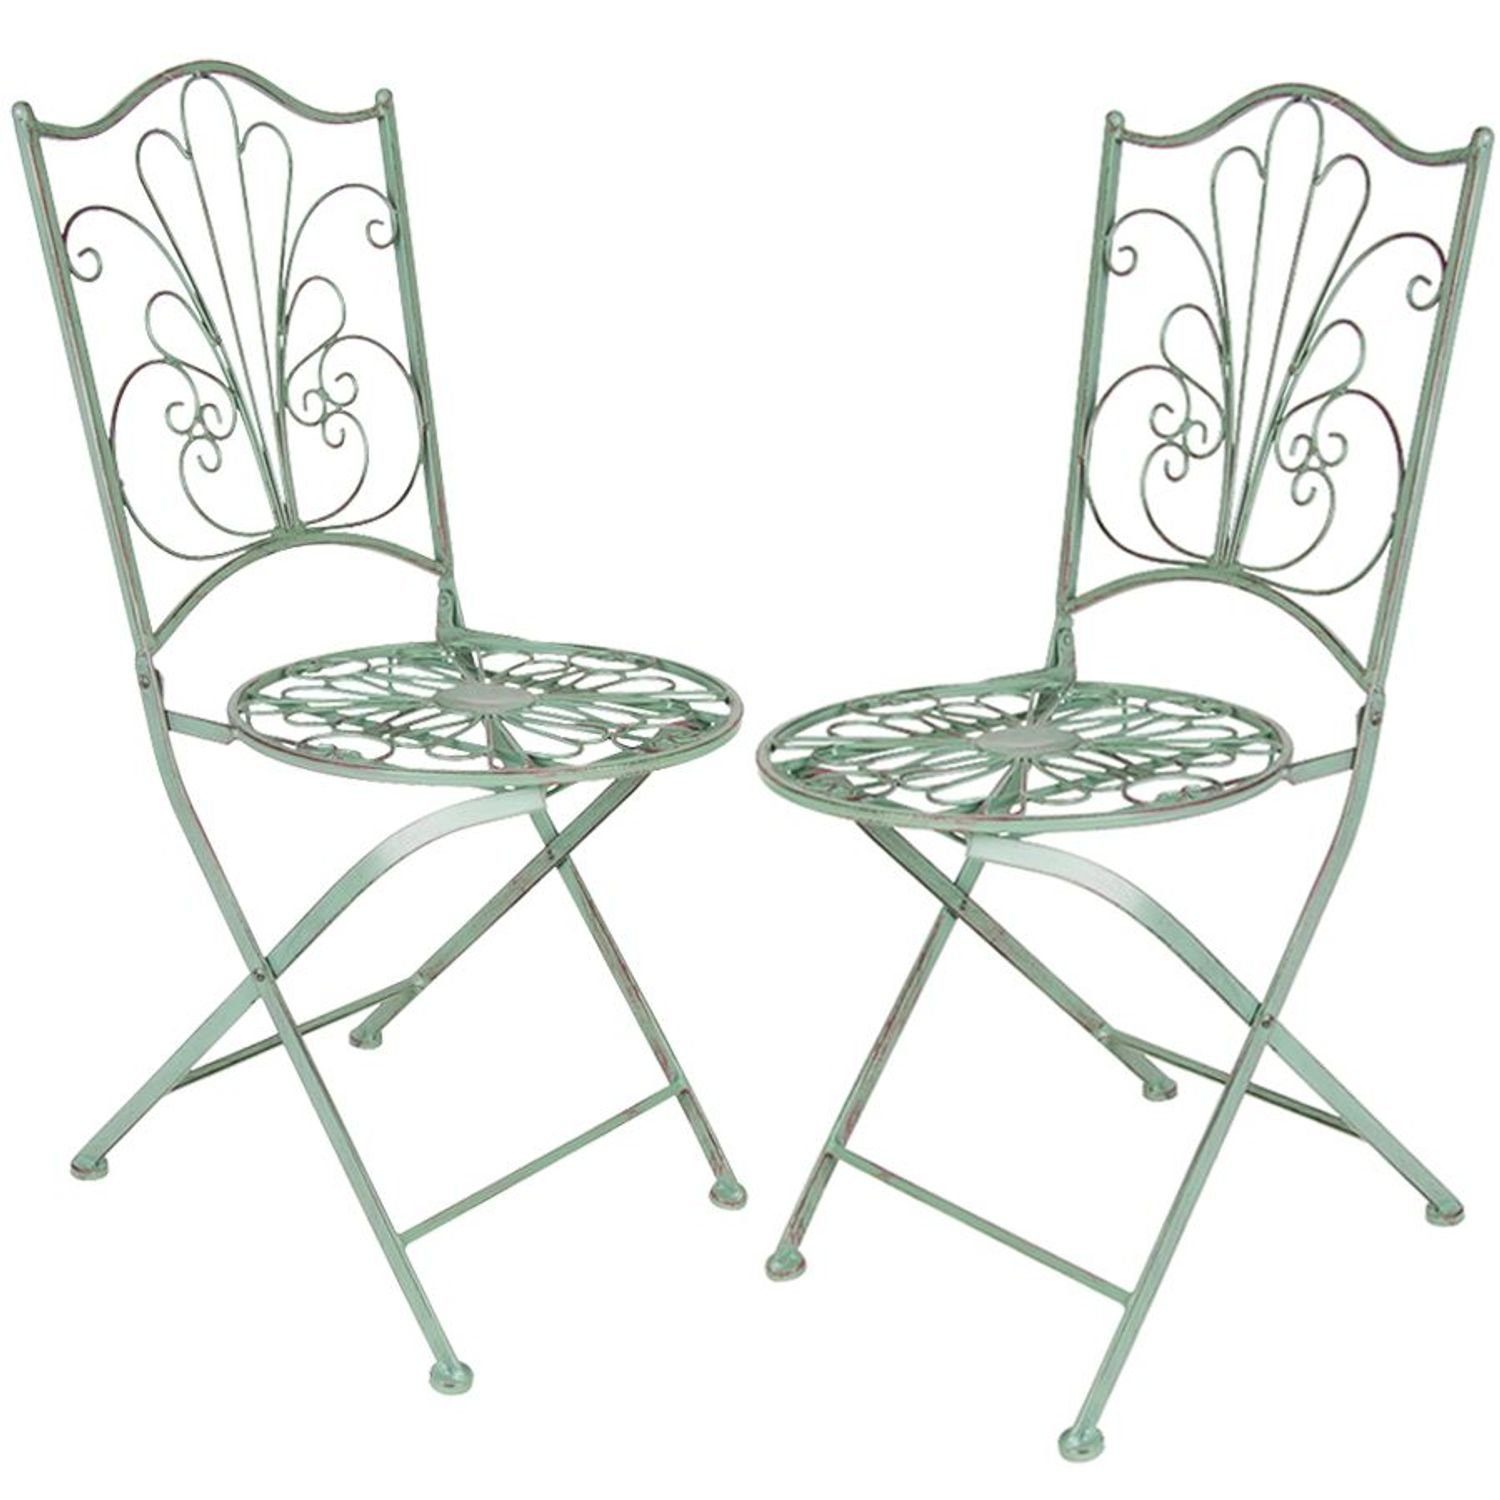 Klapptisch antik Metall Sitzgarnitur Klappstühle BURI grün Gartentisch Sitzgruppe